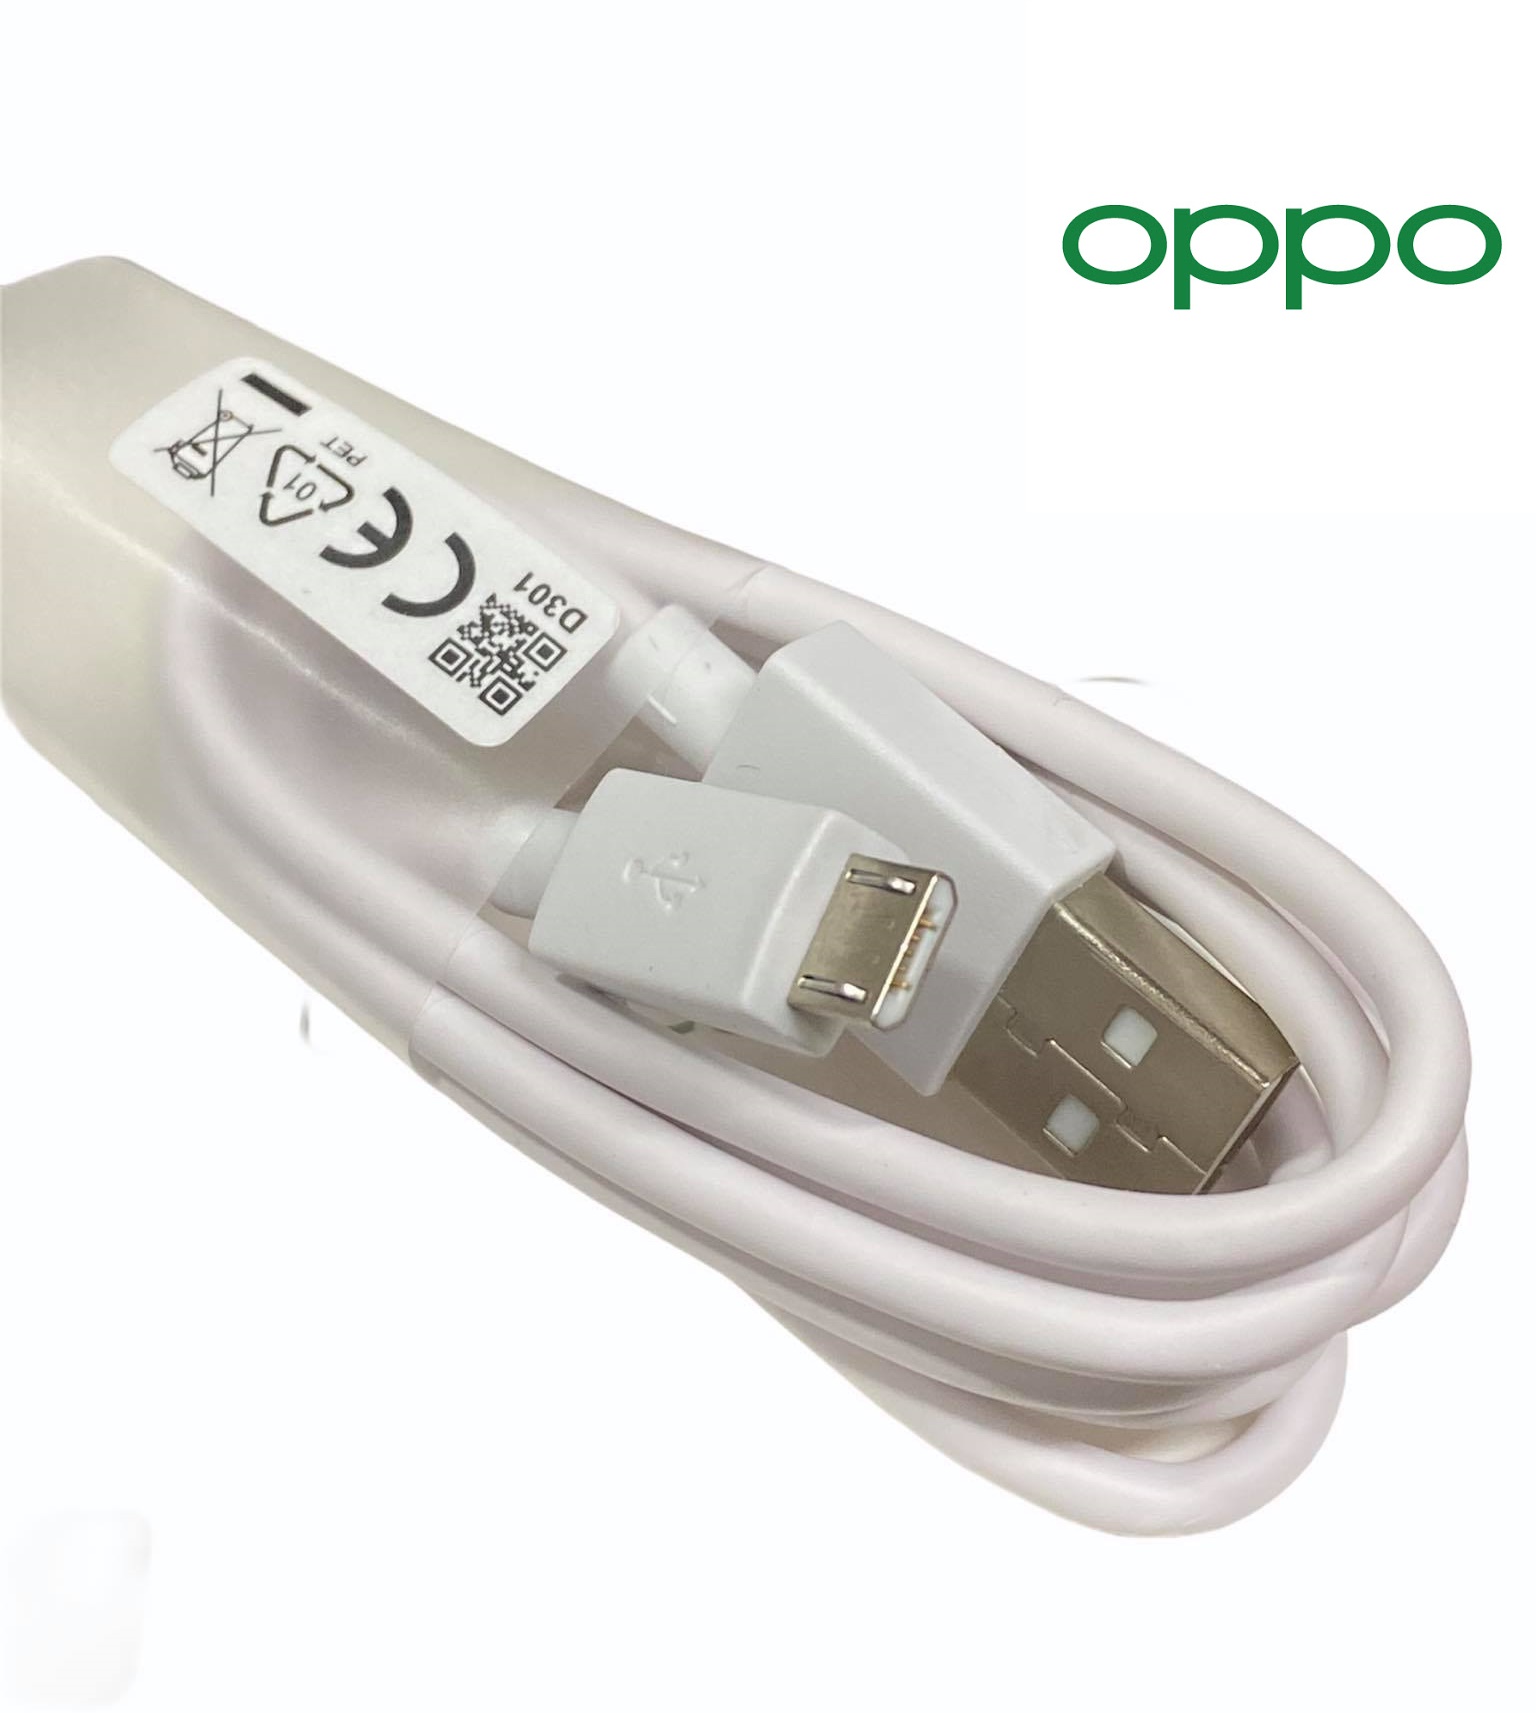 สายชาร์จแท้ OPPO USB 2A ชาร์จเต็มแอมป์ ใช้ได้รุ่น เช่น  F5/F7/A3S/A31/A37/A5S/F1/A7/F9 สายชาร์จ OPPO 2A ของแท้ 100%